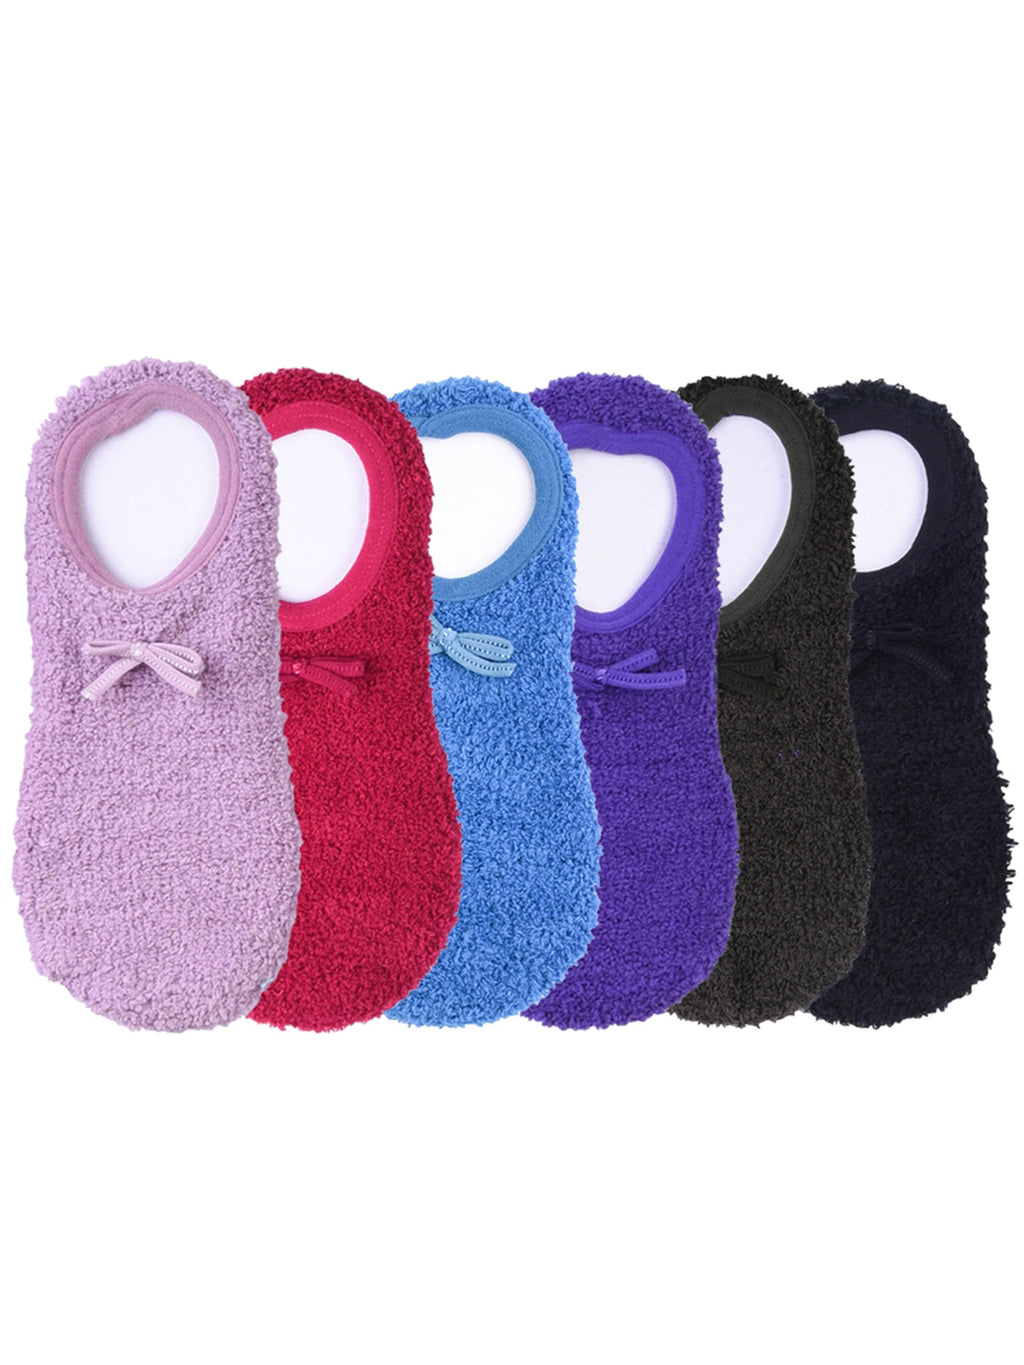 Multicolor Ballet Slipper Non-Slip 6 Pack Socks